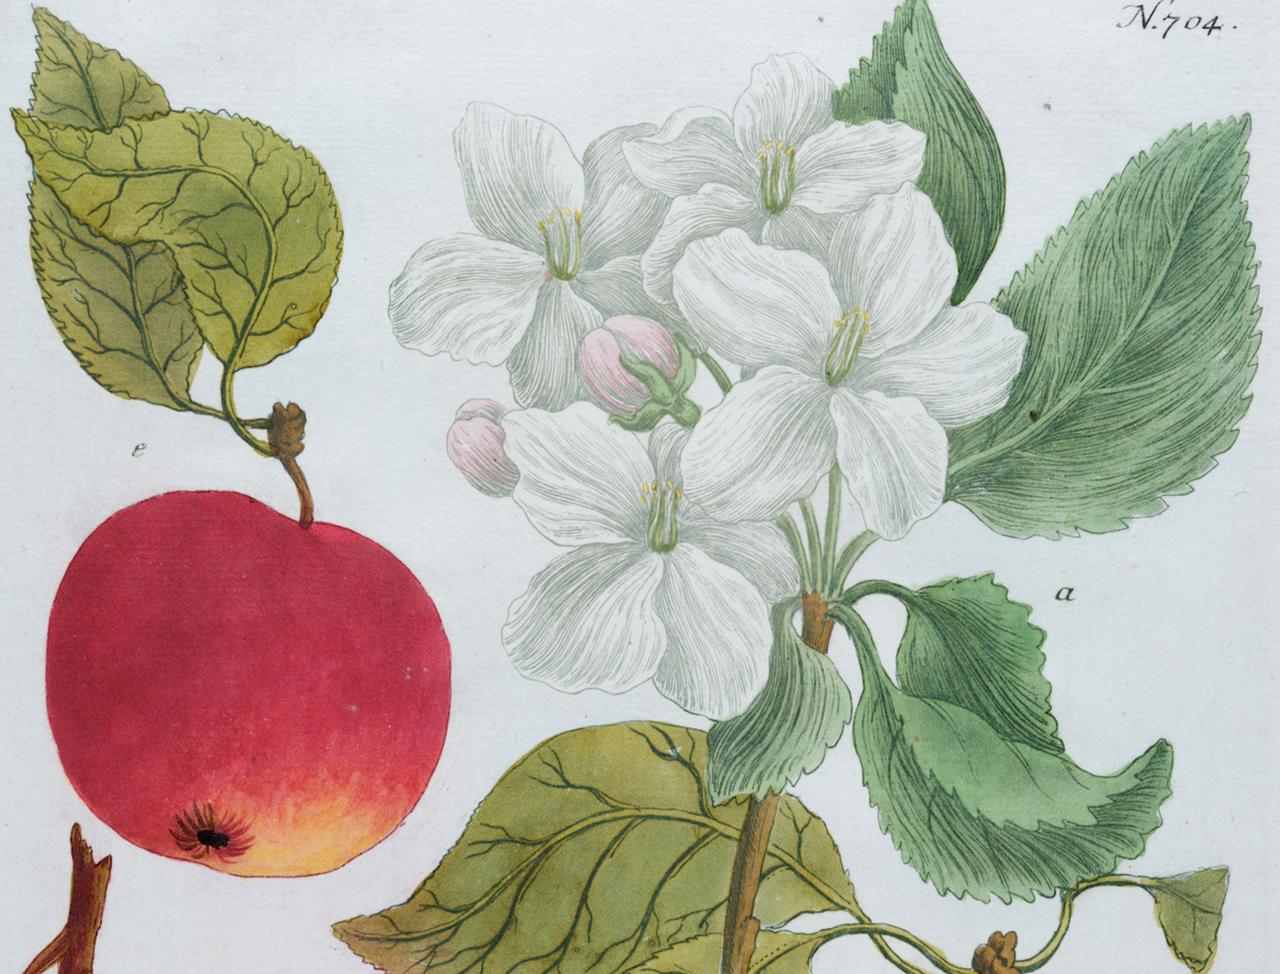 Apfel: Eine handkolorierte botanische Gravur aus dem 18. Jahrhundert von J. Weinmann (Naturalismus), Print, von Johann Wilhelm Weinmann